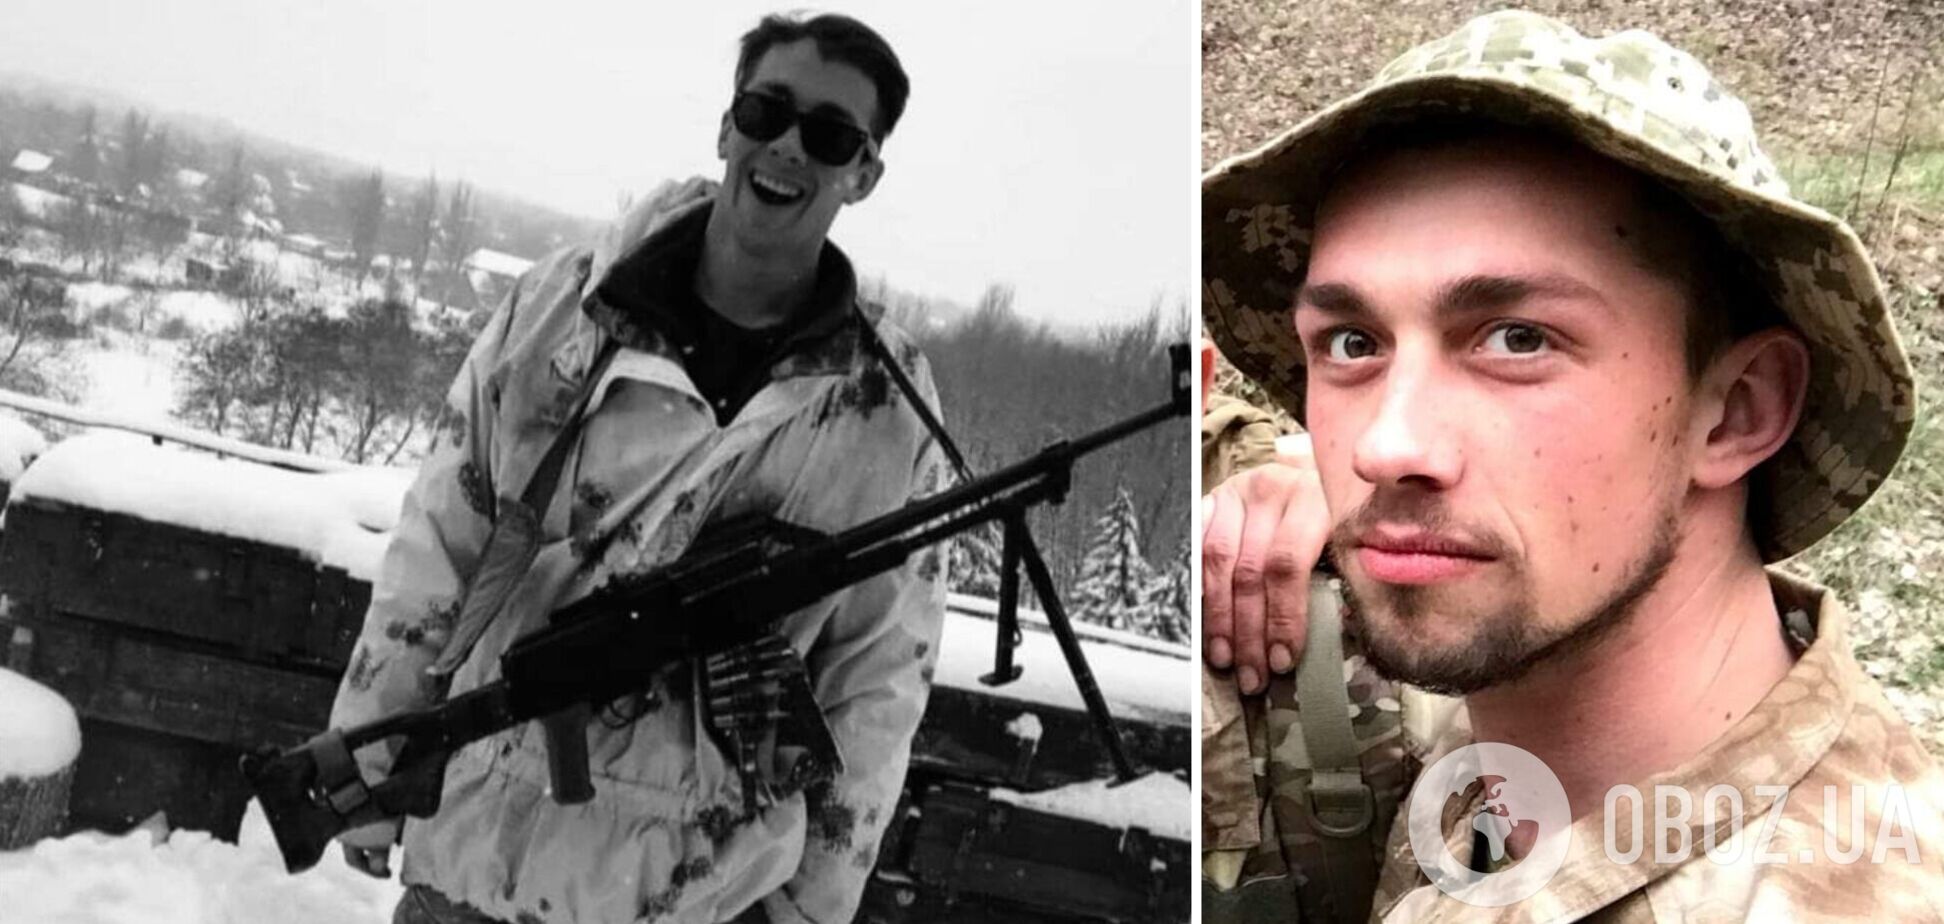 Похоронили через год: в ближнем бою под Донецком погиб чемпион Украины по плаванию, служивший в президентском полку